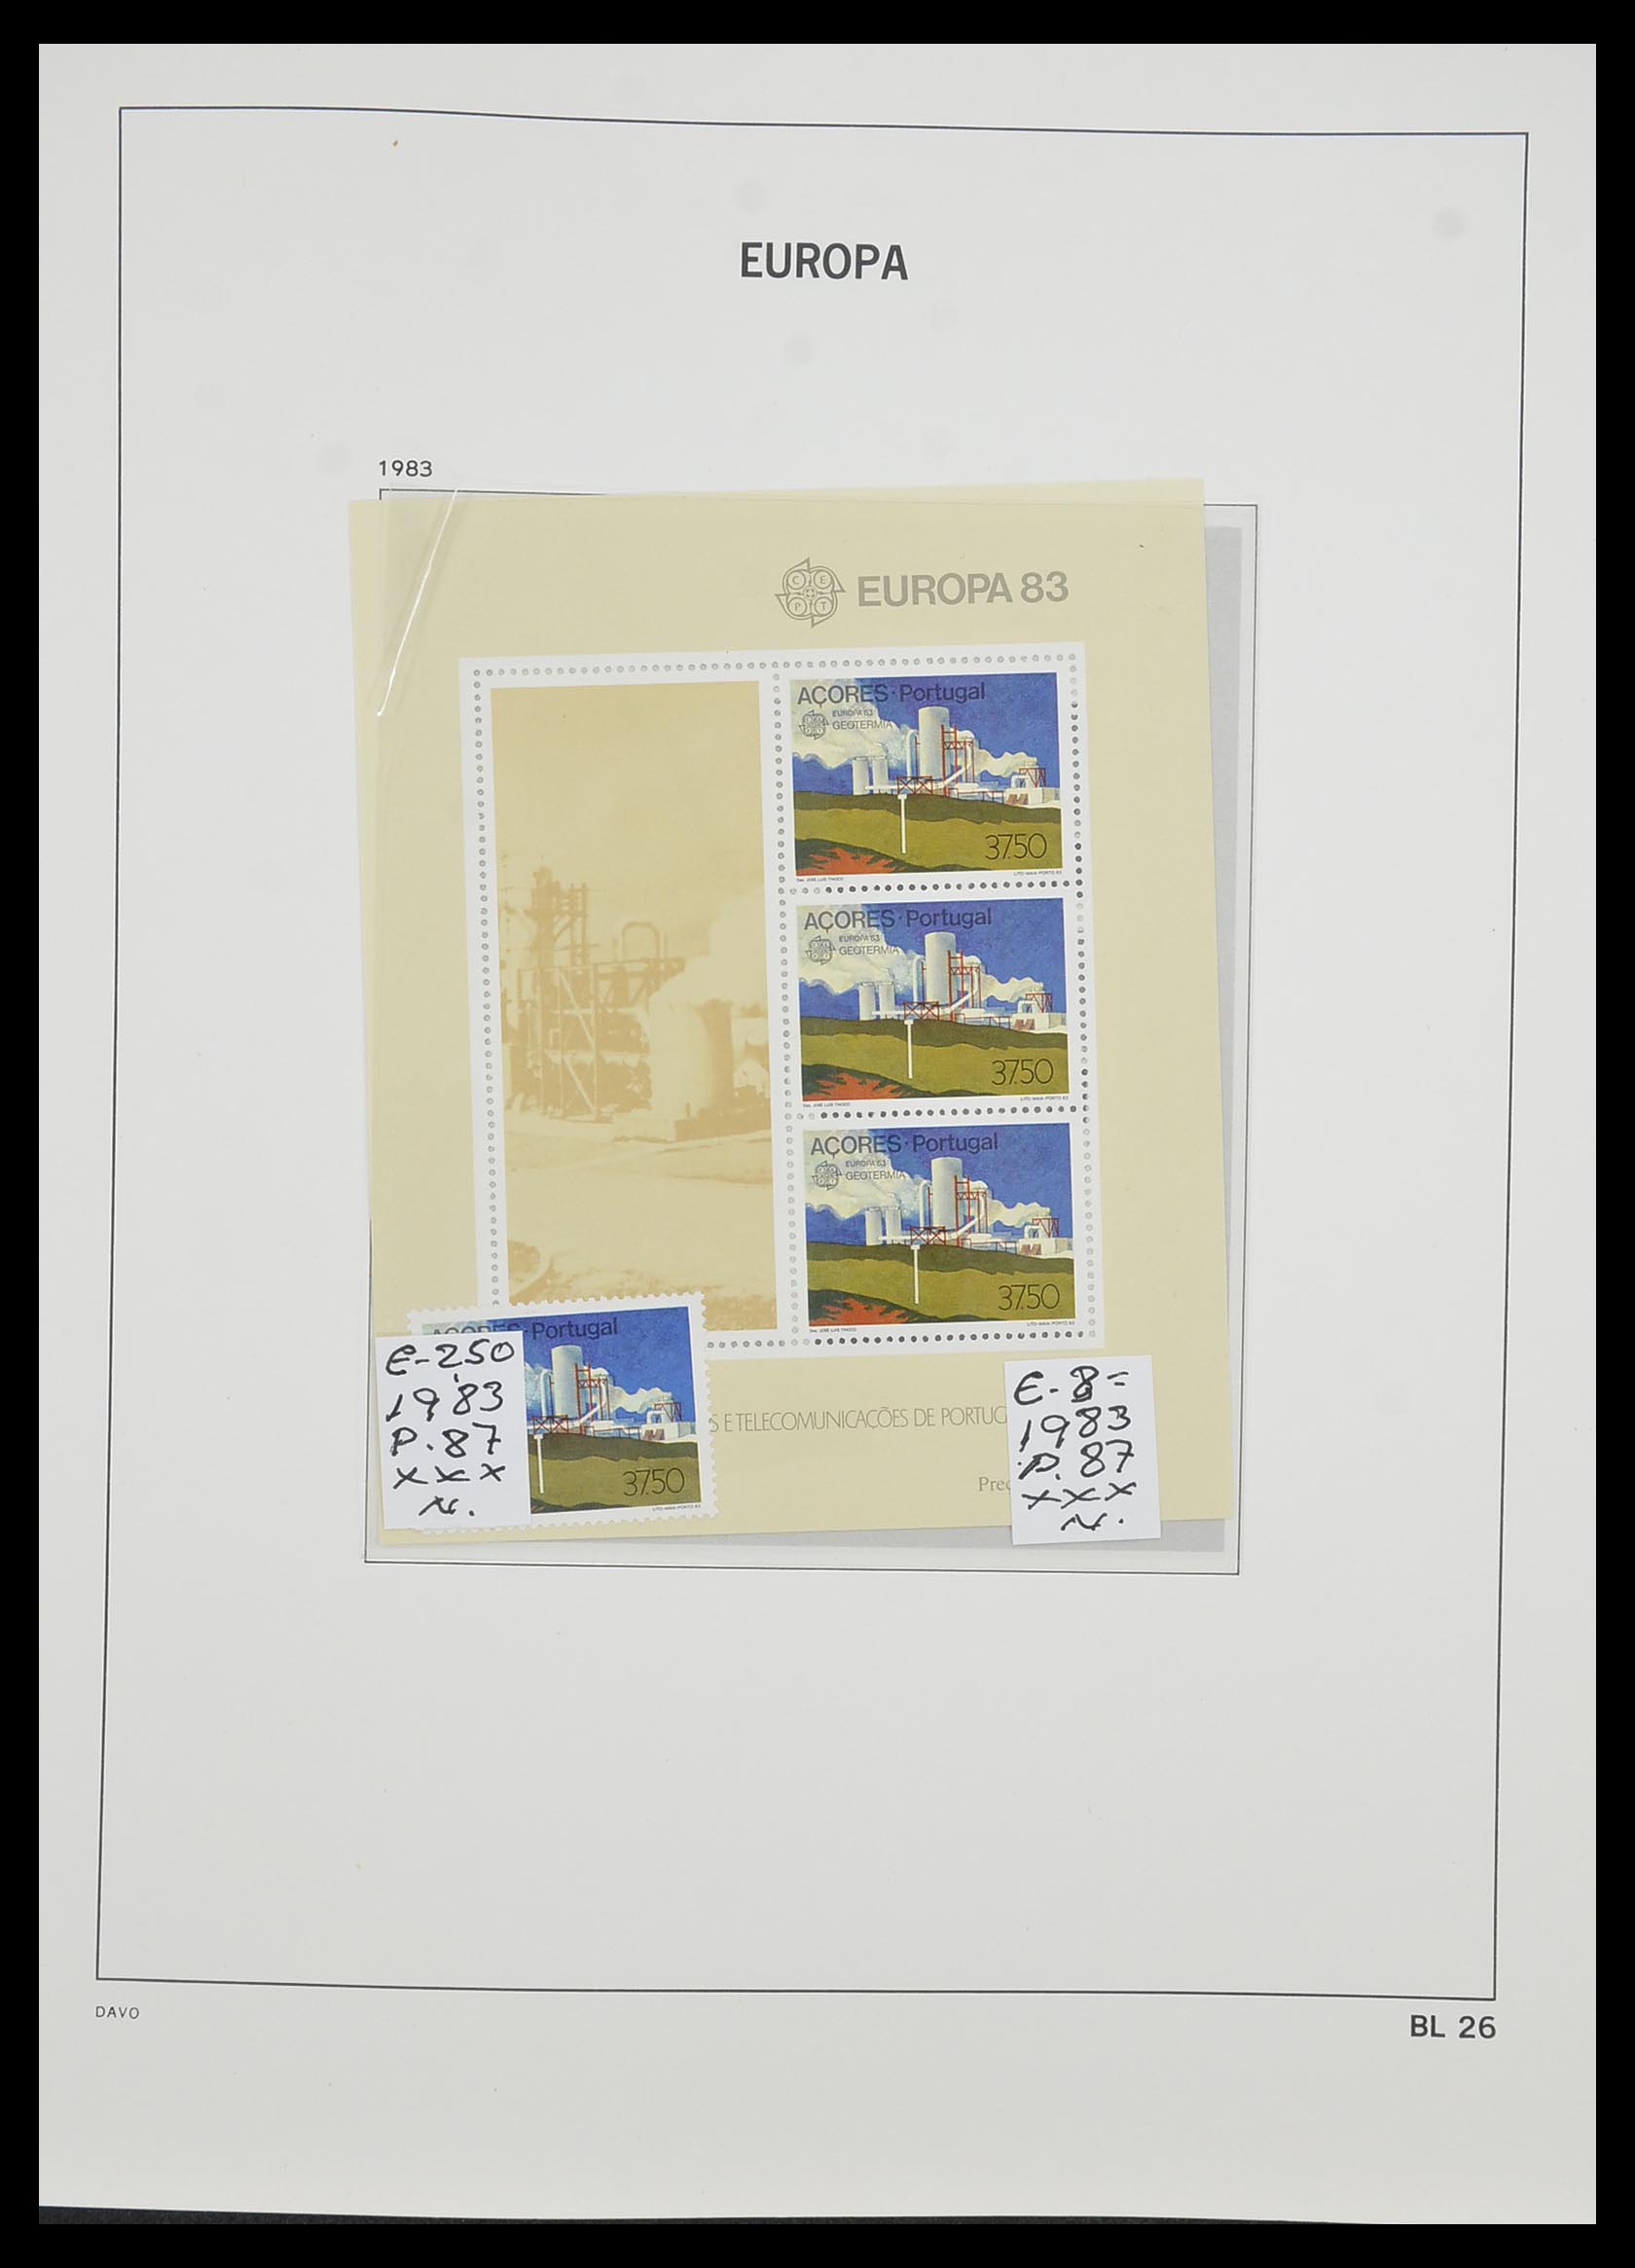 33985 027 - Stamp collection 33985 Europa CEPT souvenir sheets 1974-2014.